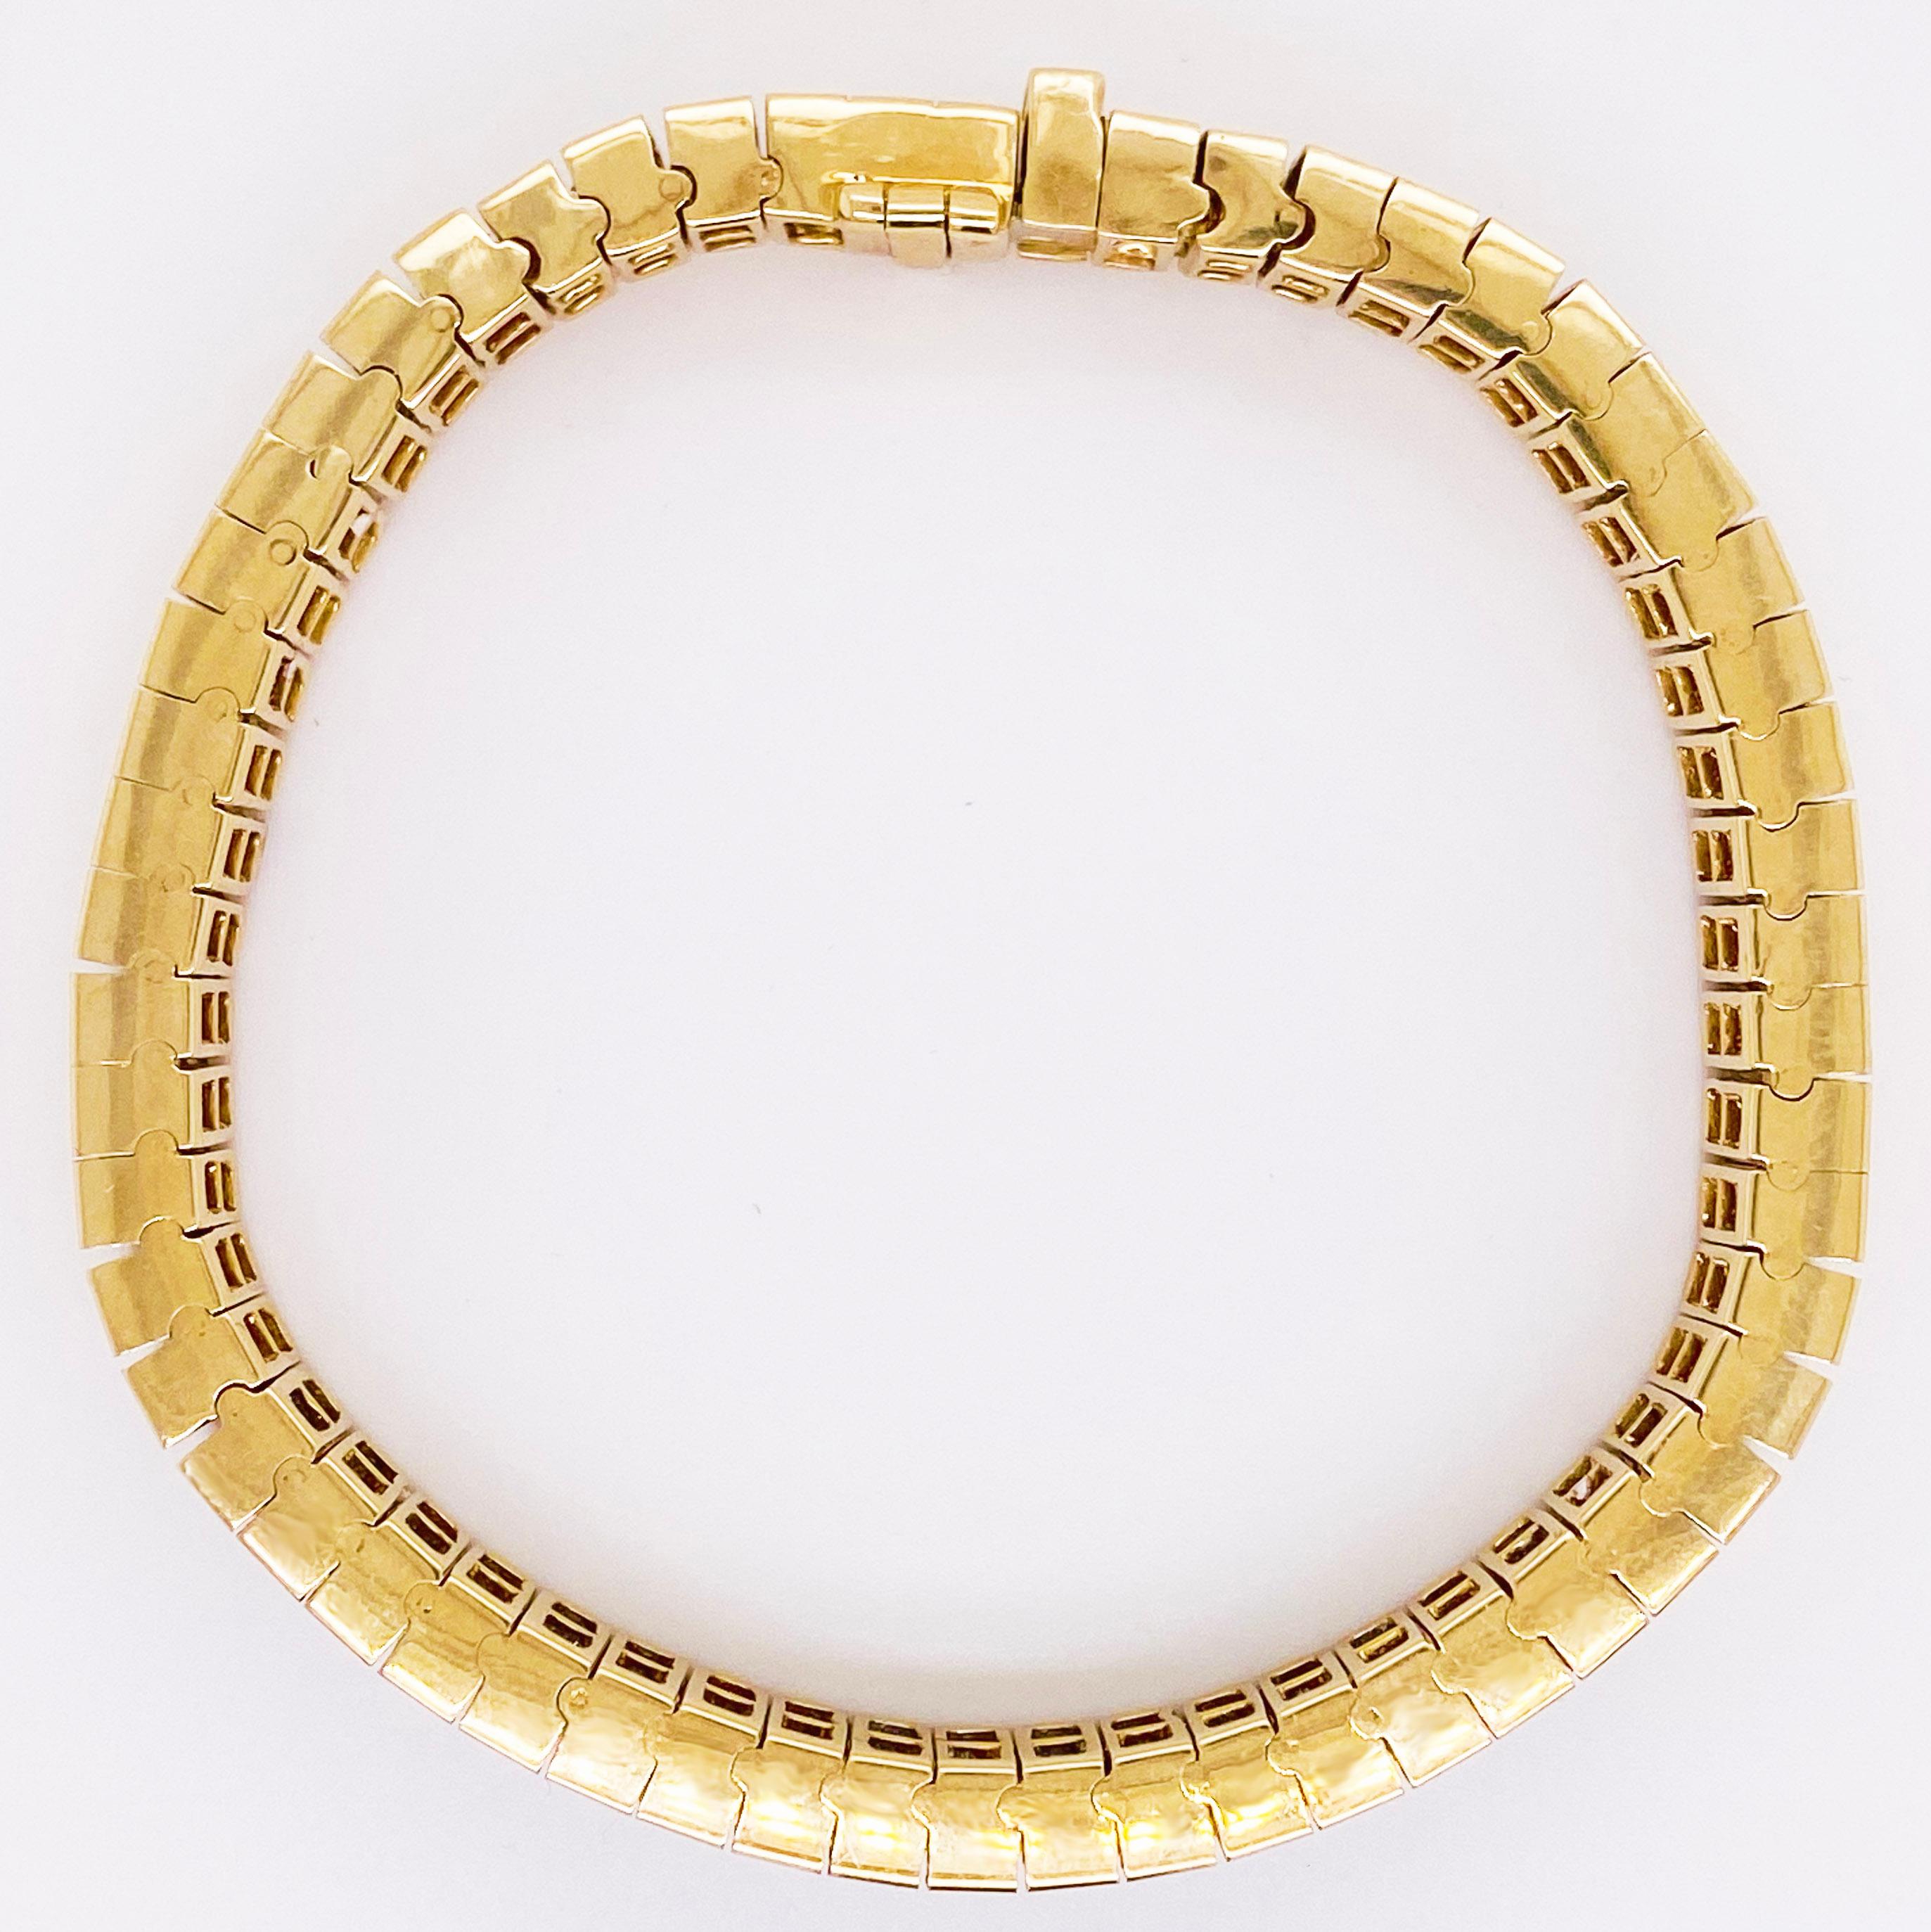 4 Carat Princess Cut Diamond Paved Gold Bracelet, 4.00 Carat Total Weight Dia For Sale 1